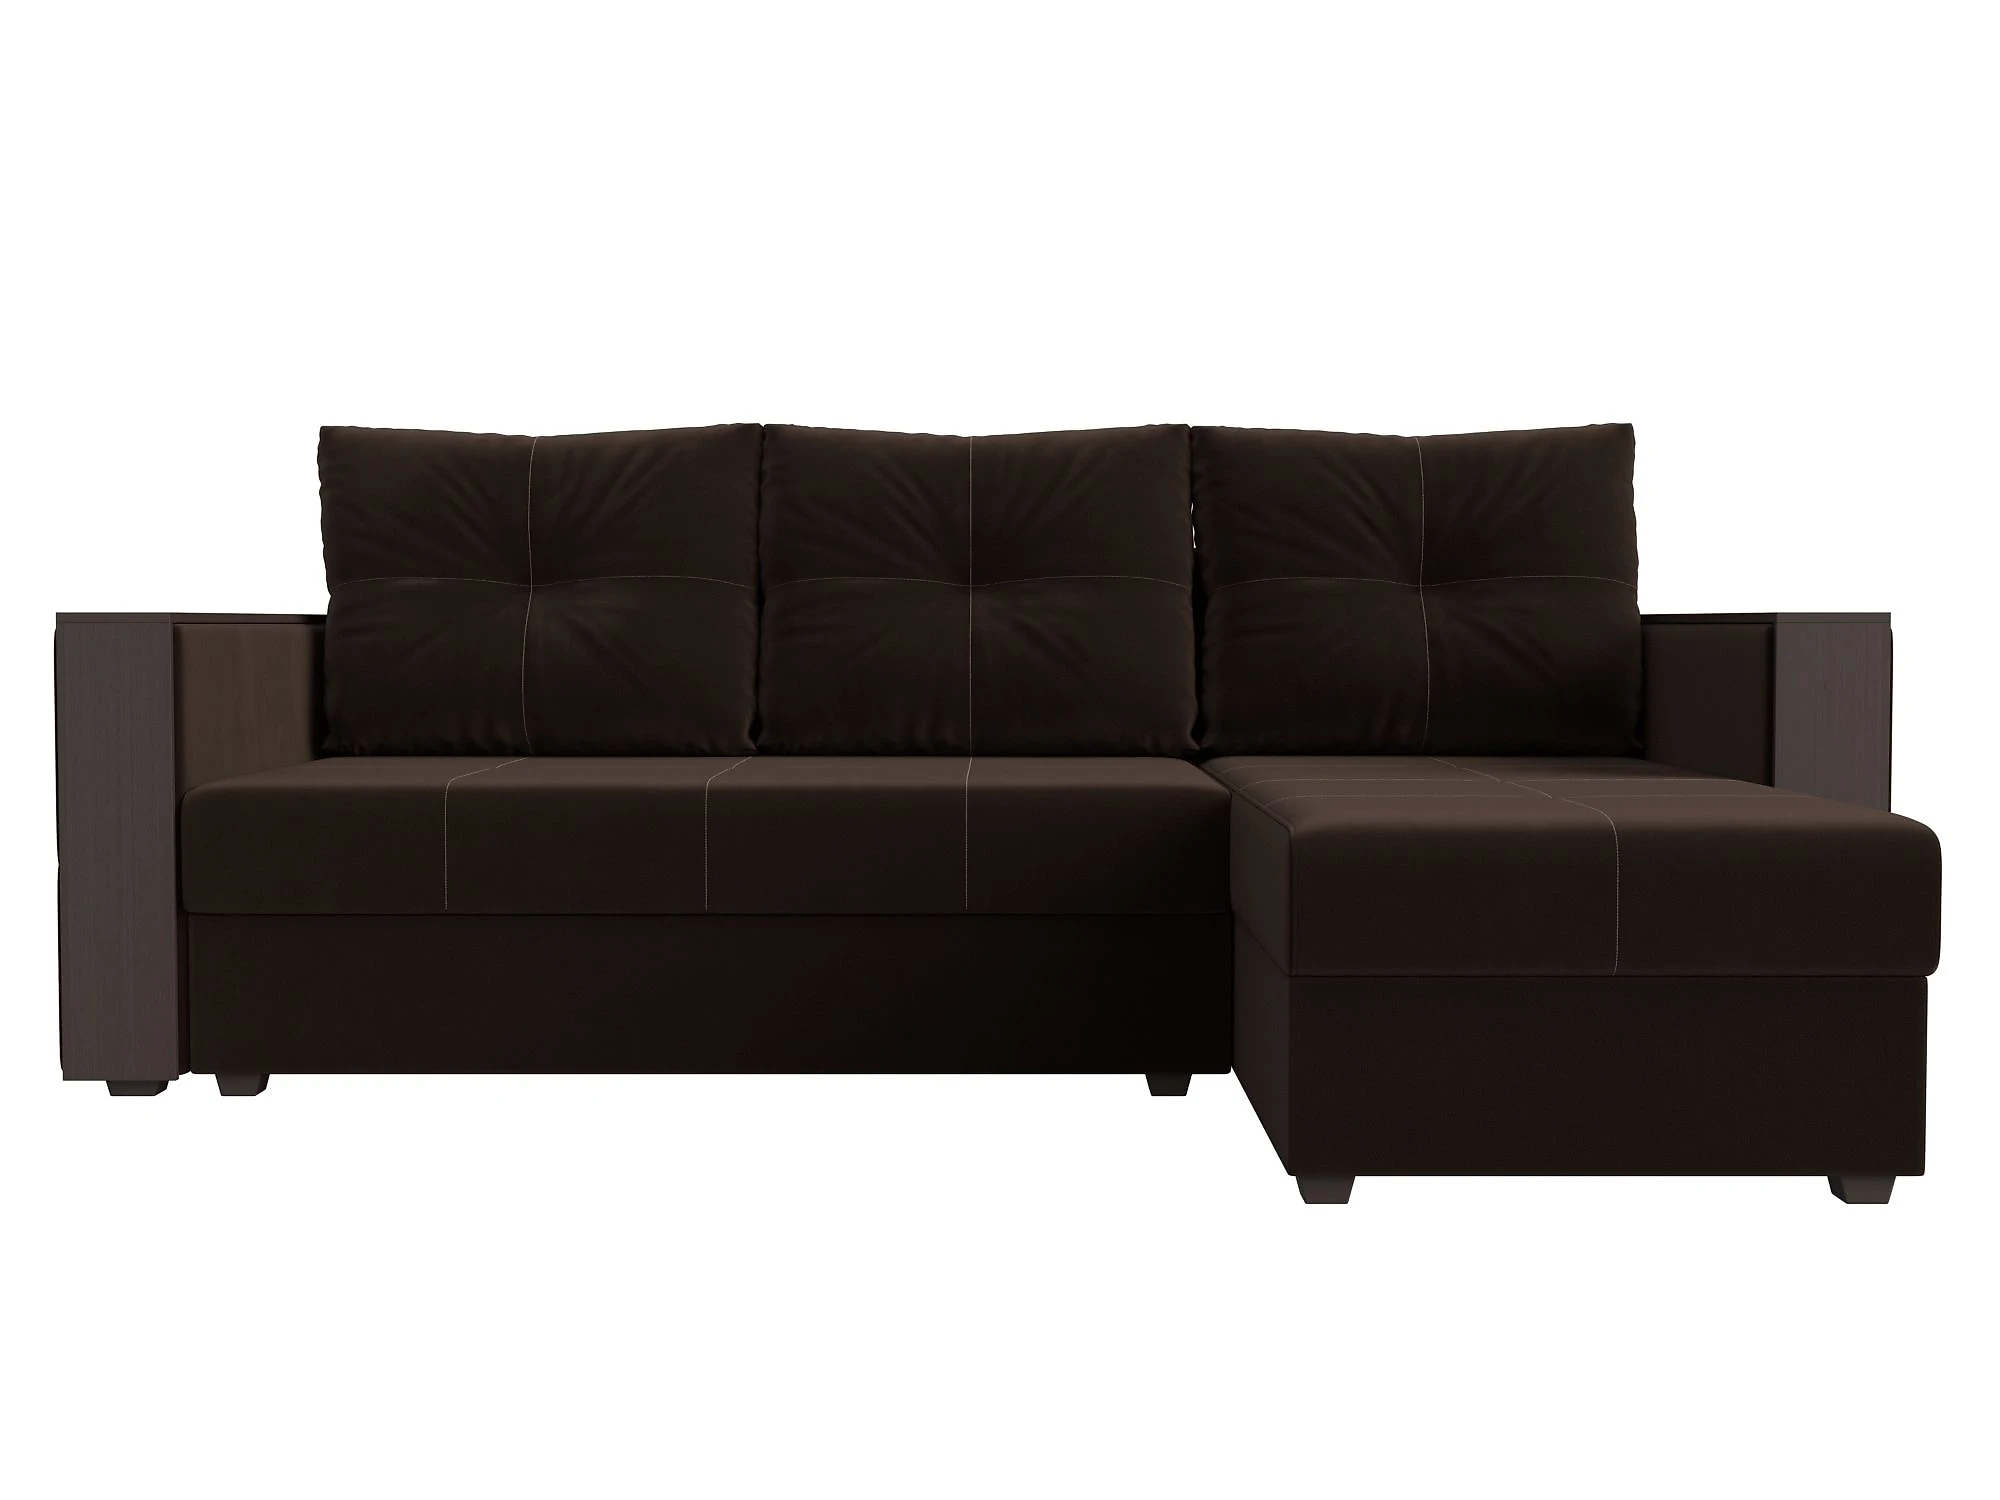 Односпальный угловой диван Валенсия Лайт Дизайн 6